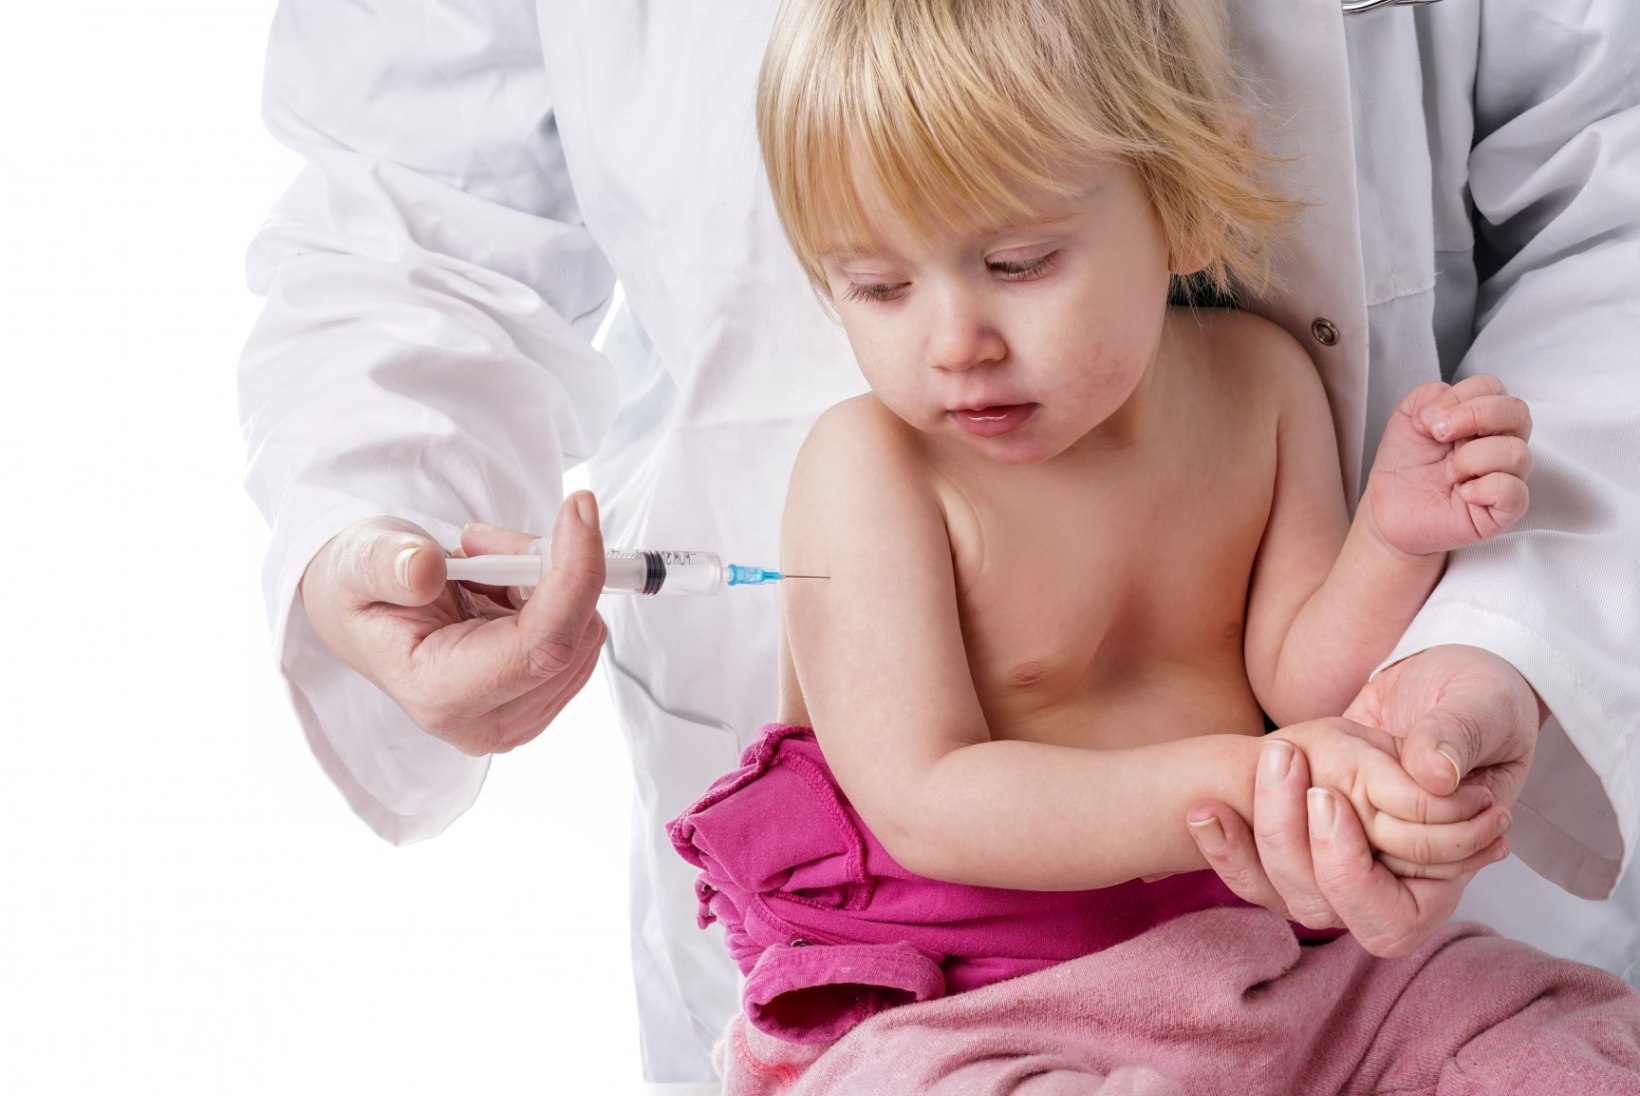 Laste rotaviirusvastane vaktsineerimine vähendas oluliselt haigestumiste arvu